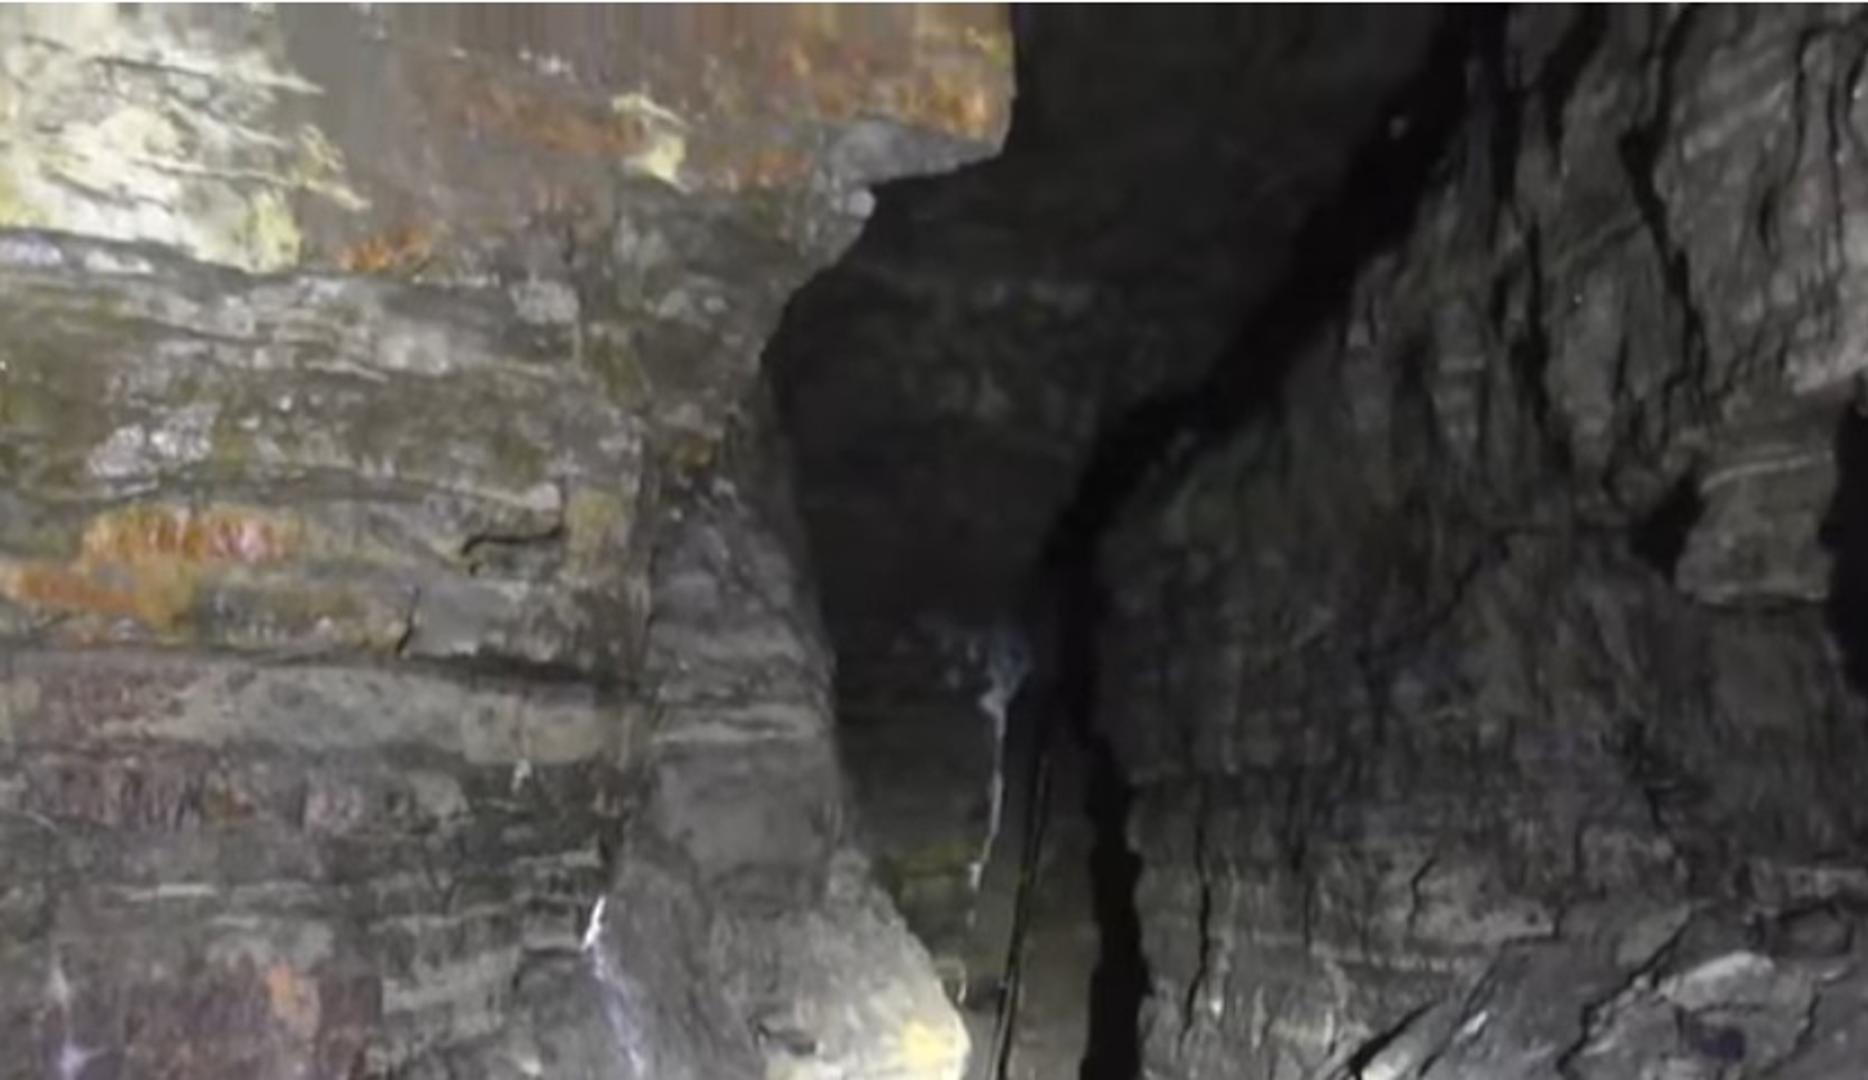 On tvrdi kako su tuneli u špilji formirani prije nekoliko tisuća godina, tijekom posljednjeg ledenog doba.